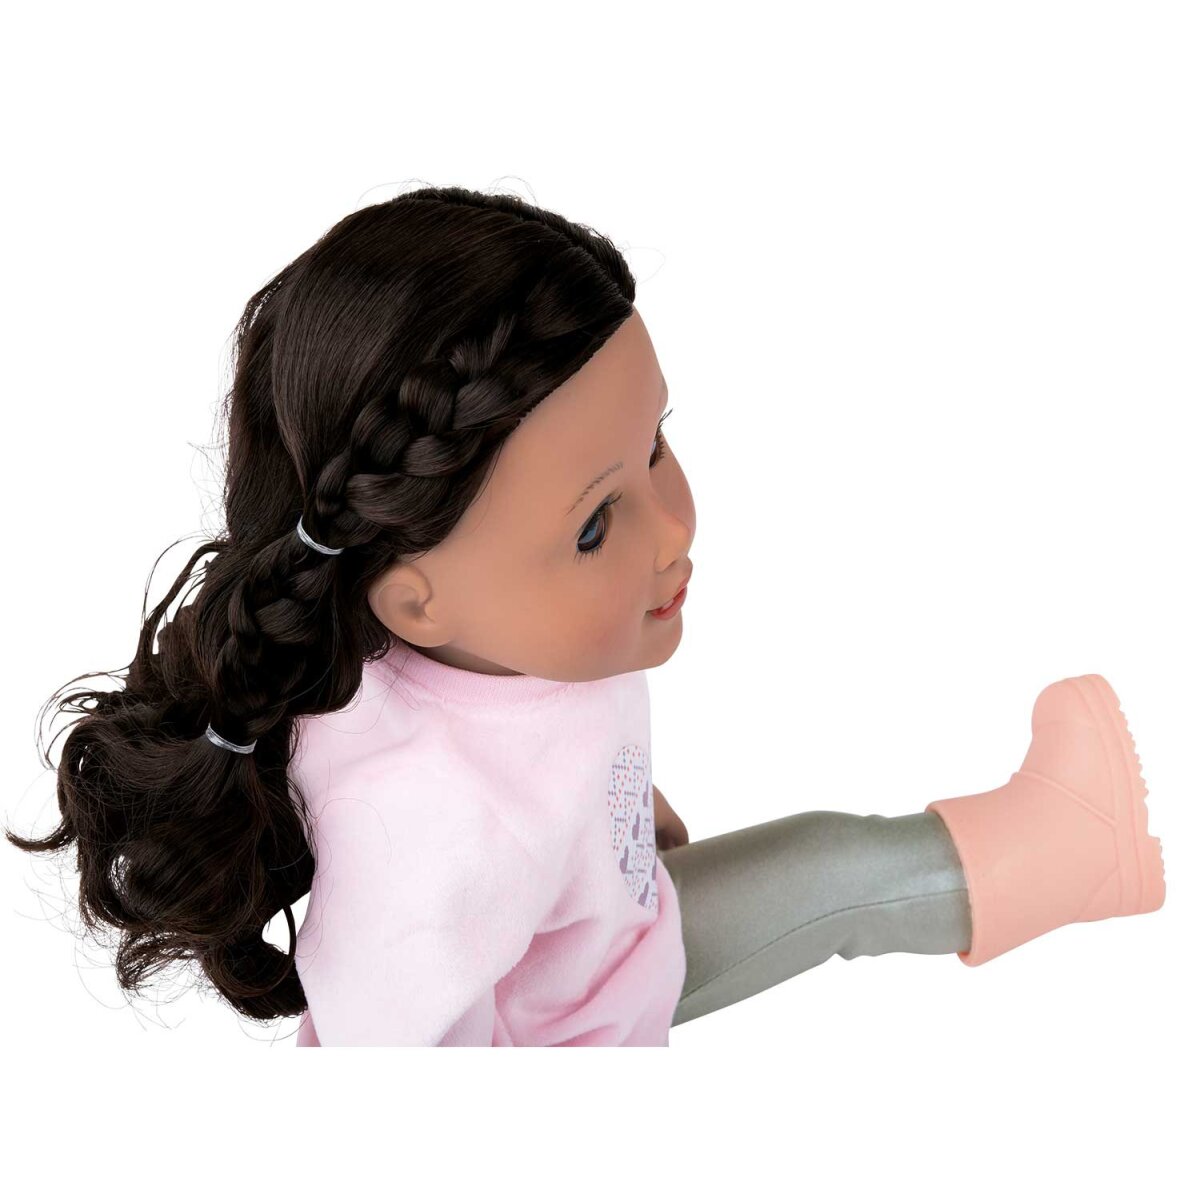 Playtive Puppe »Julia«, mit dicken B-Ware, - Haaren Frisieren zum € schönen, 17,99